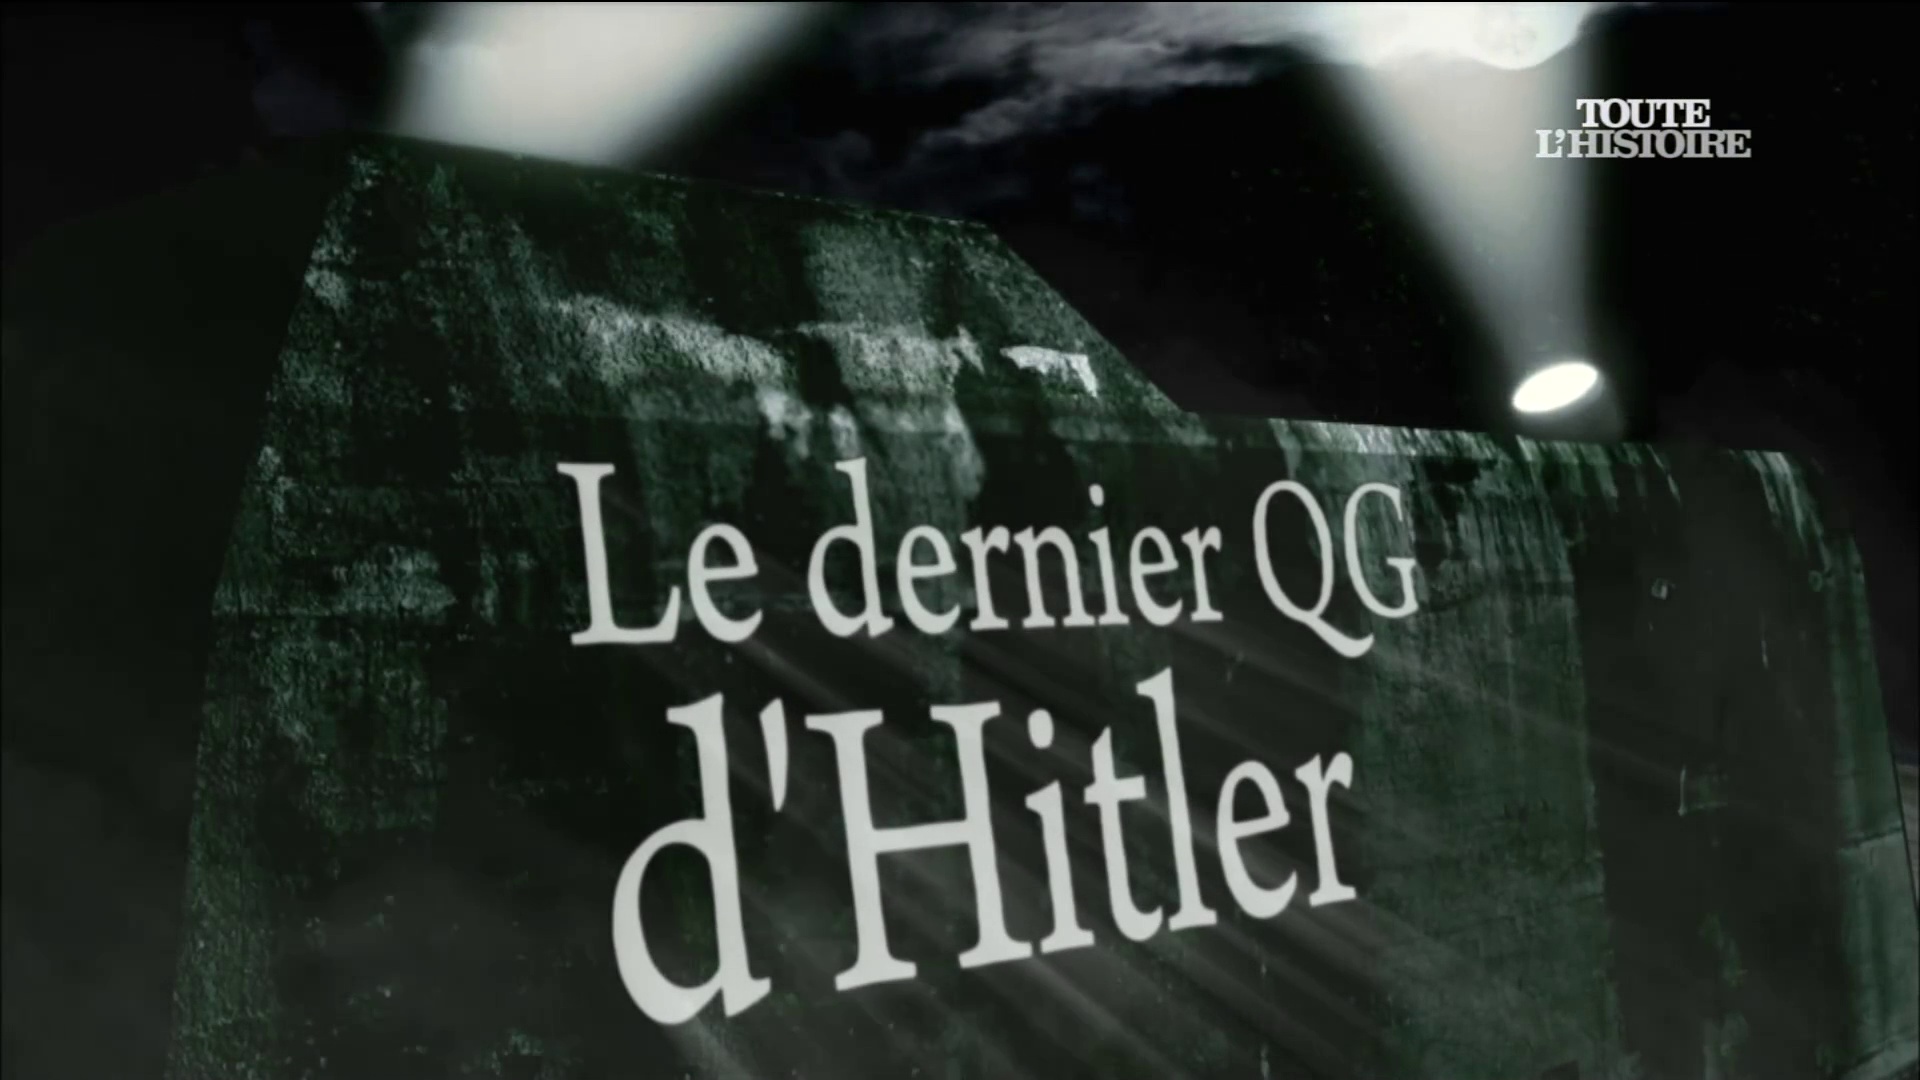 Documentaire Le dernier QG d’Hitler